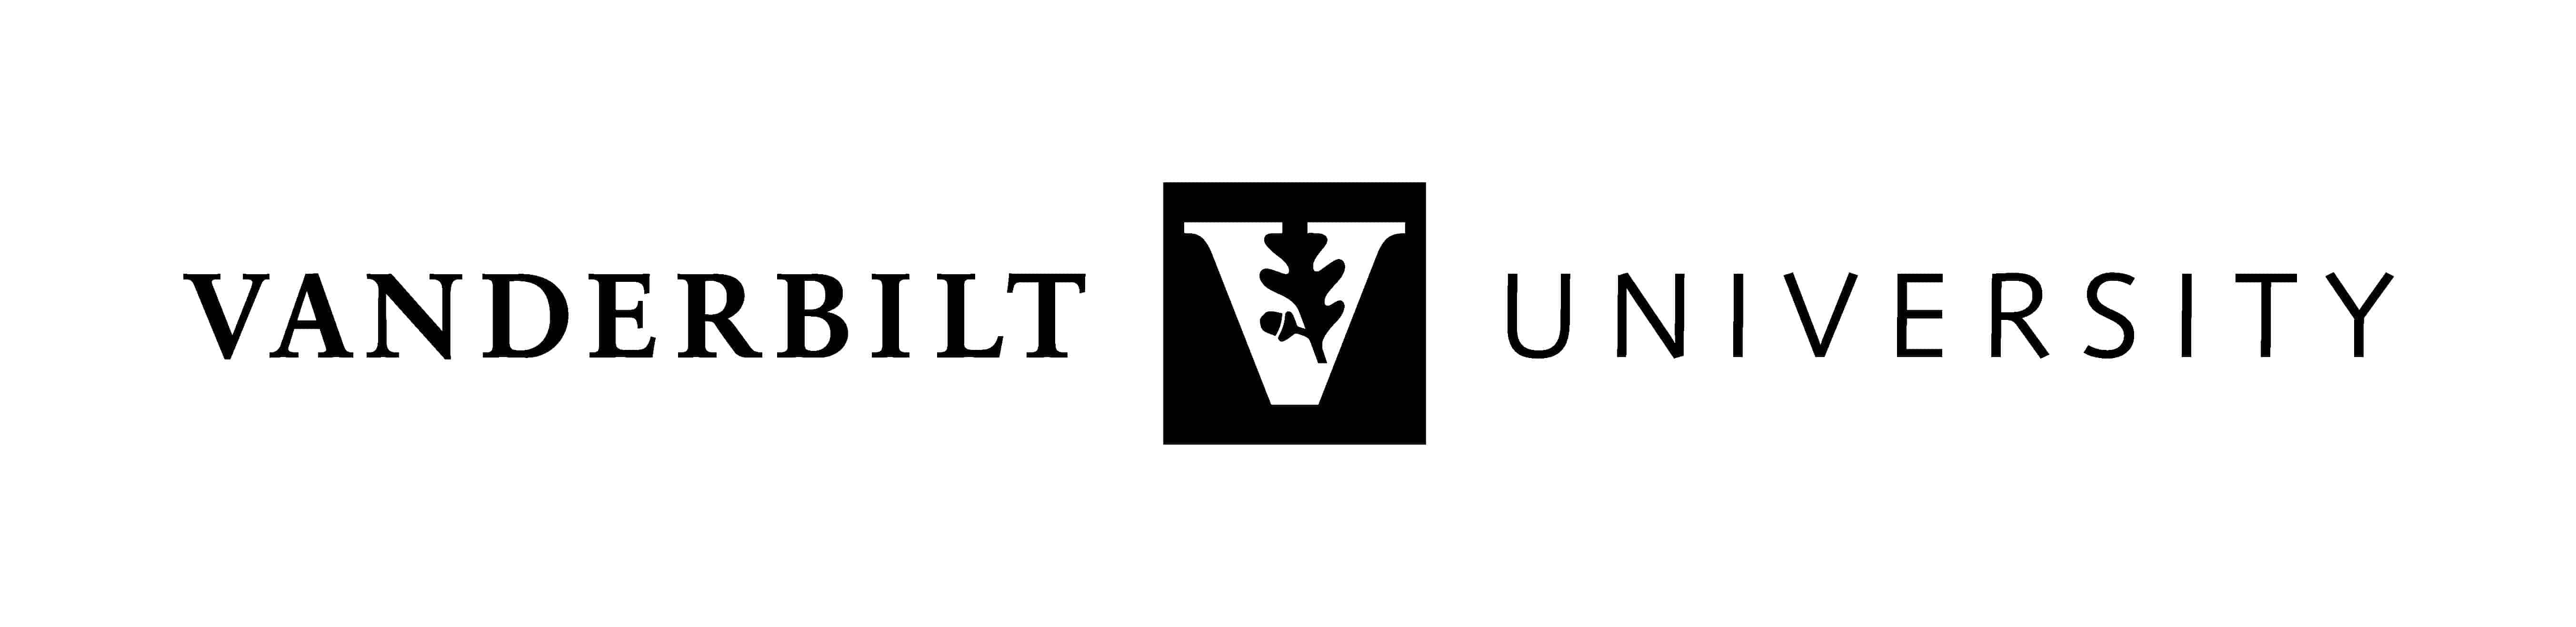 ms in nursing vanderbilt university logo 171556